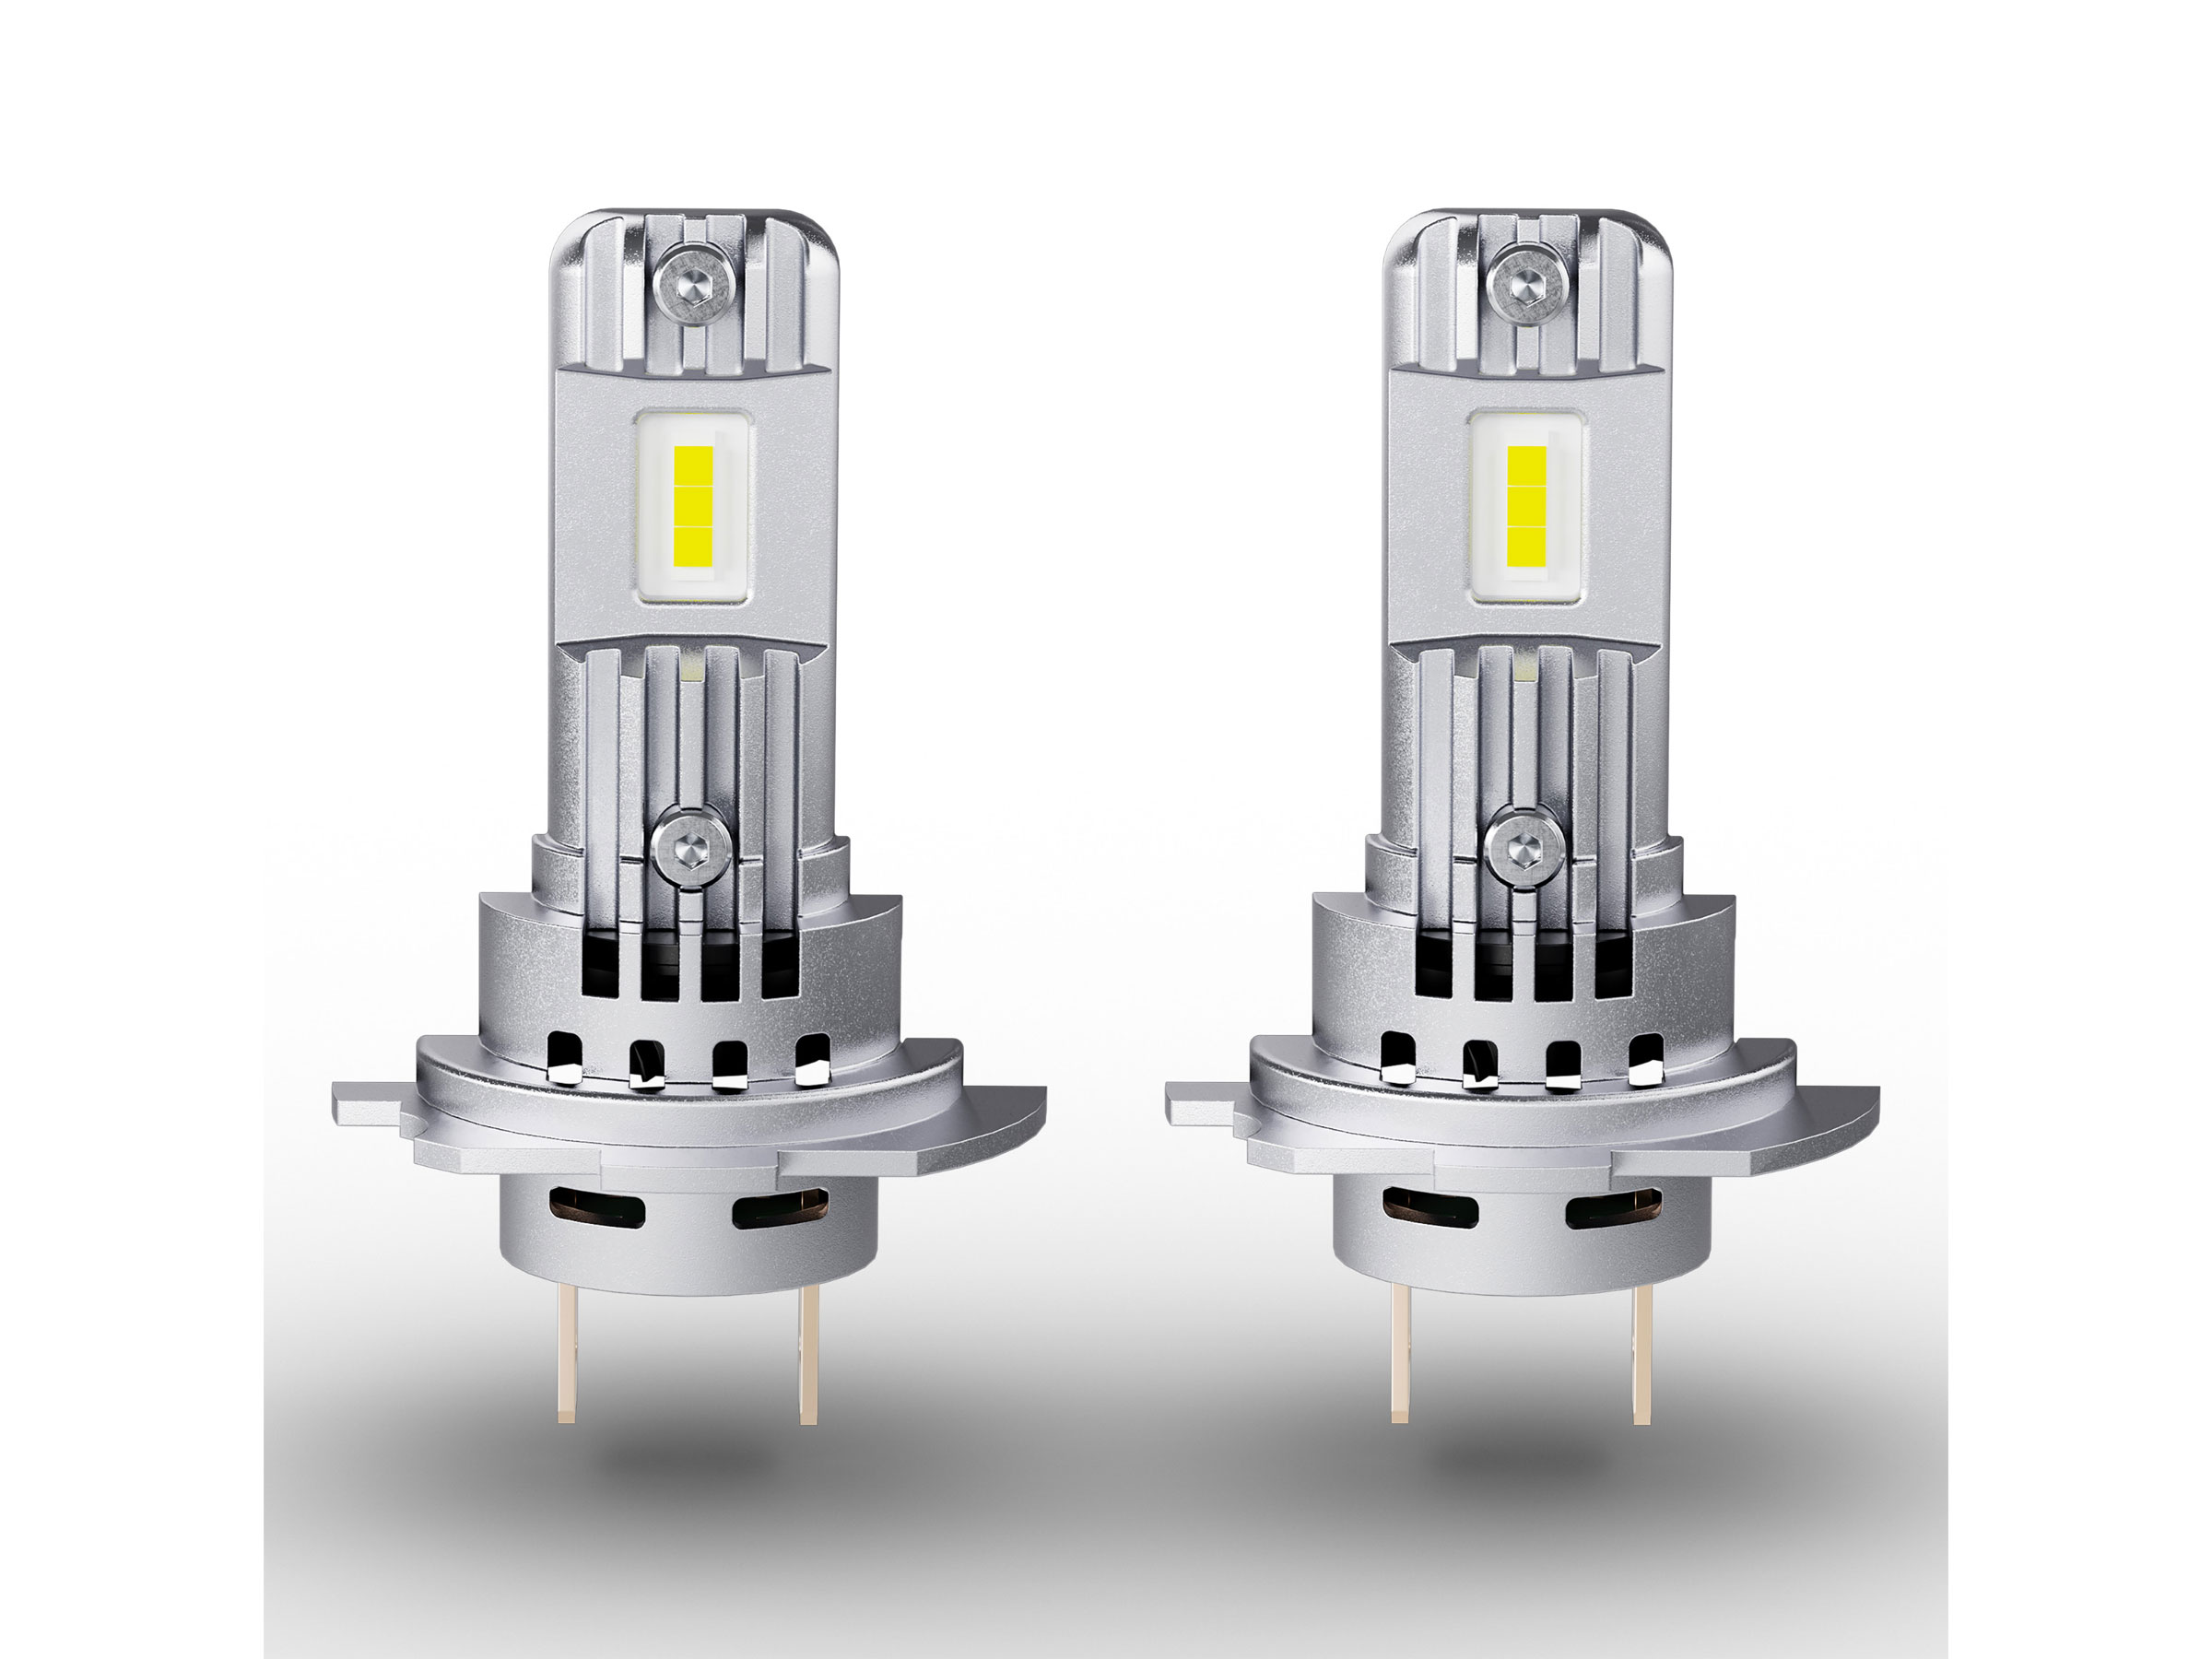 OSRAM LEDriving LED Abblendlicht EASY H7 / H18 12V 16.2W PX26d